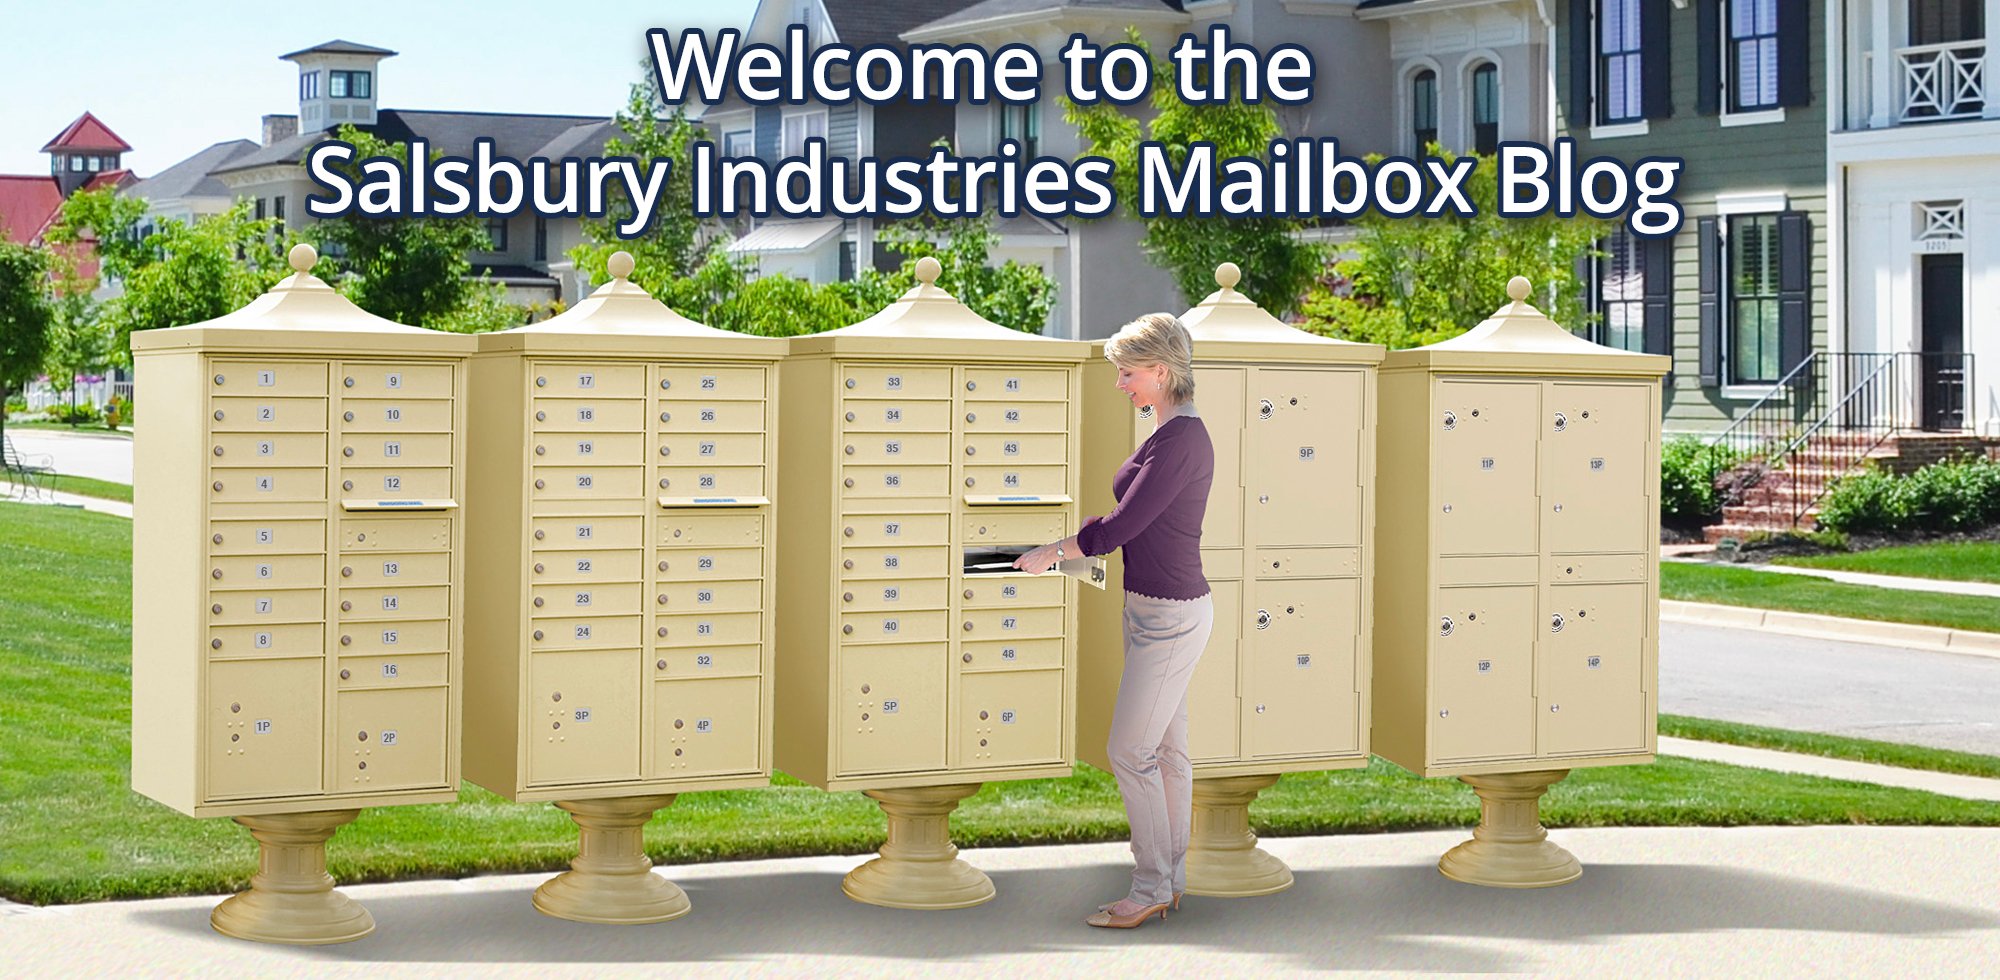 Mailbox Blog Landing Page